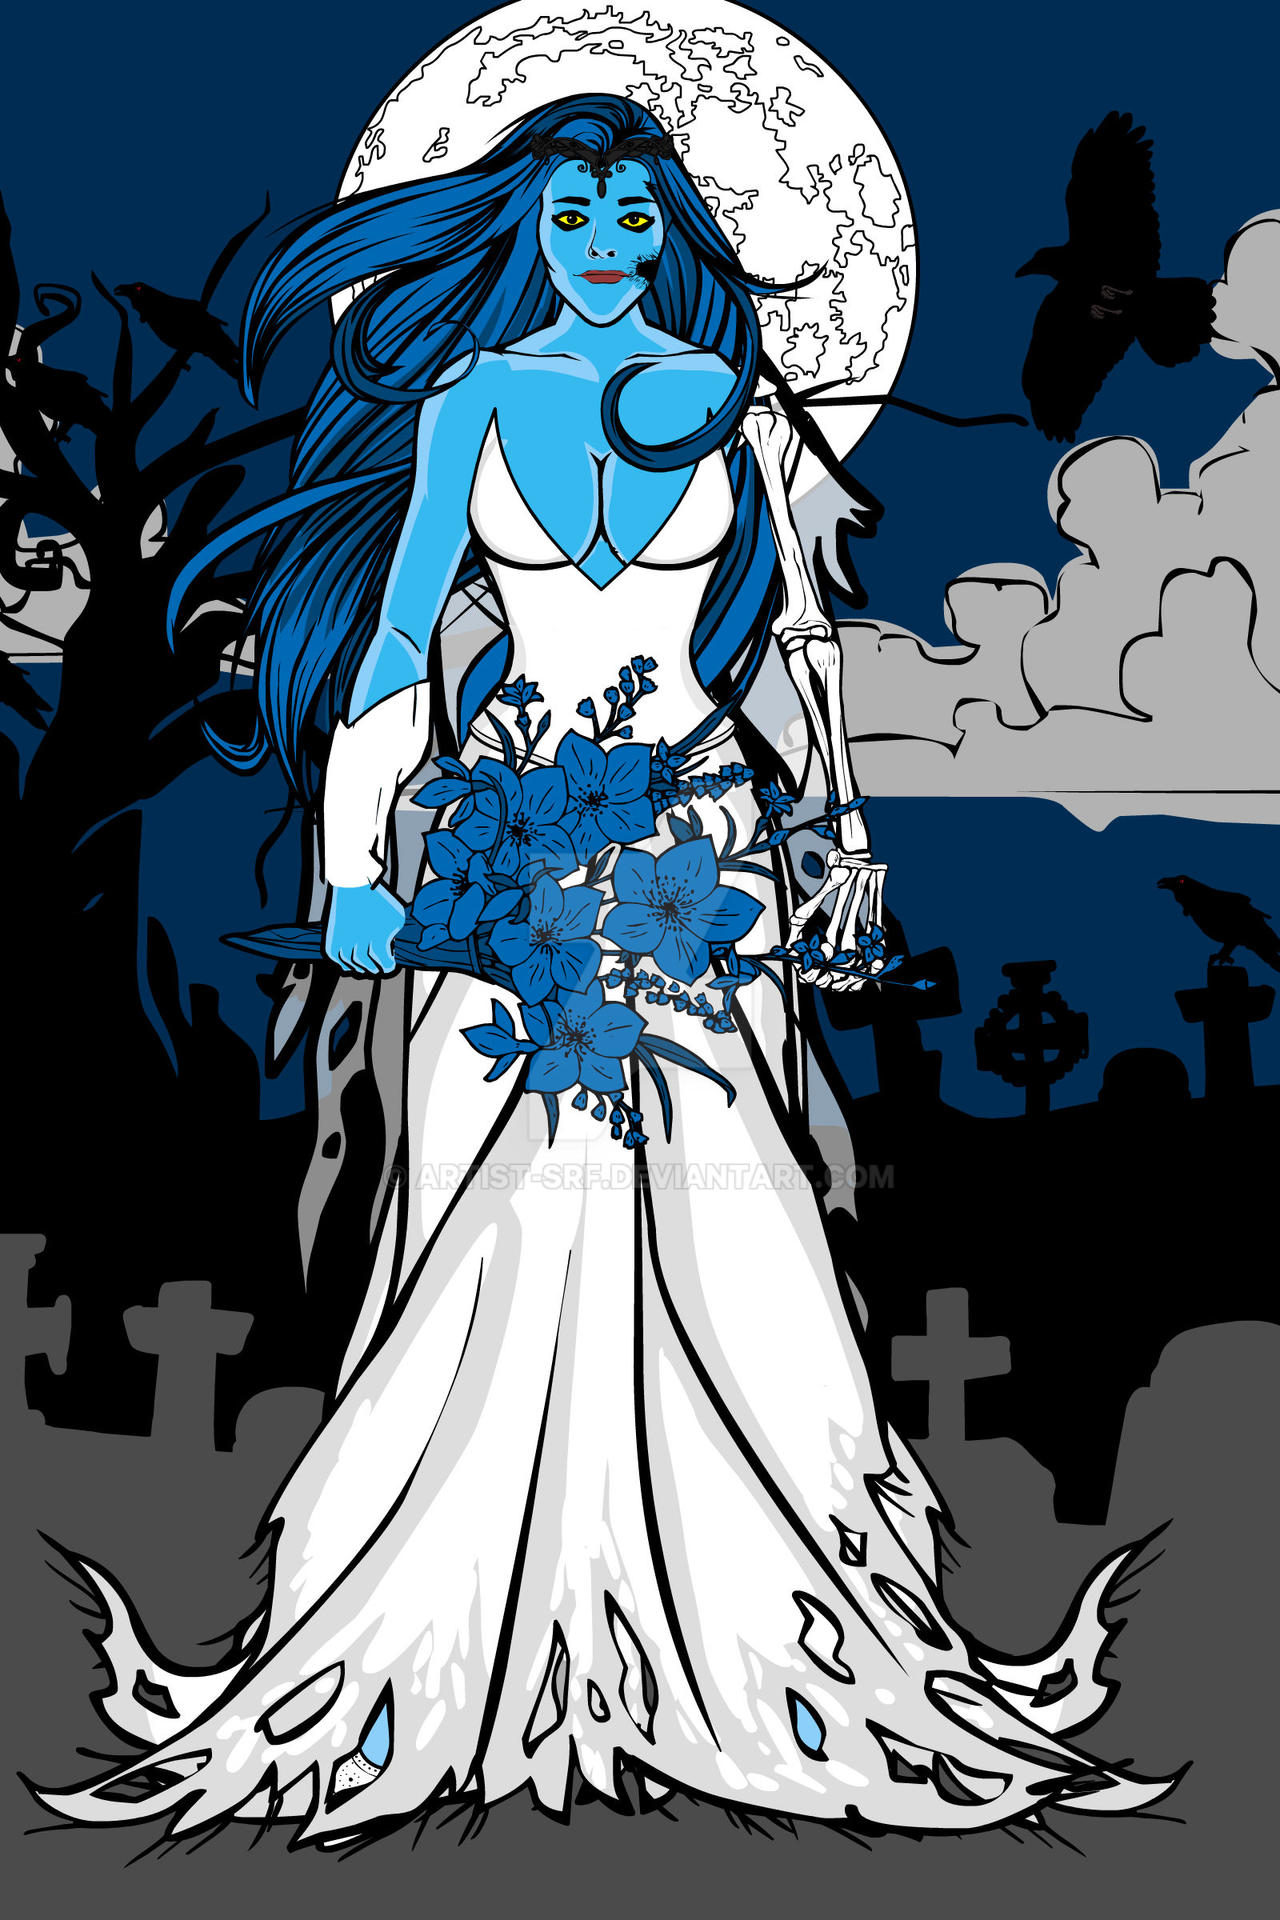 Heromachine Corpse Bride By Artist Srf On Deviantart